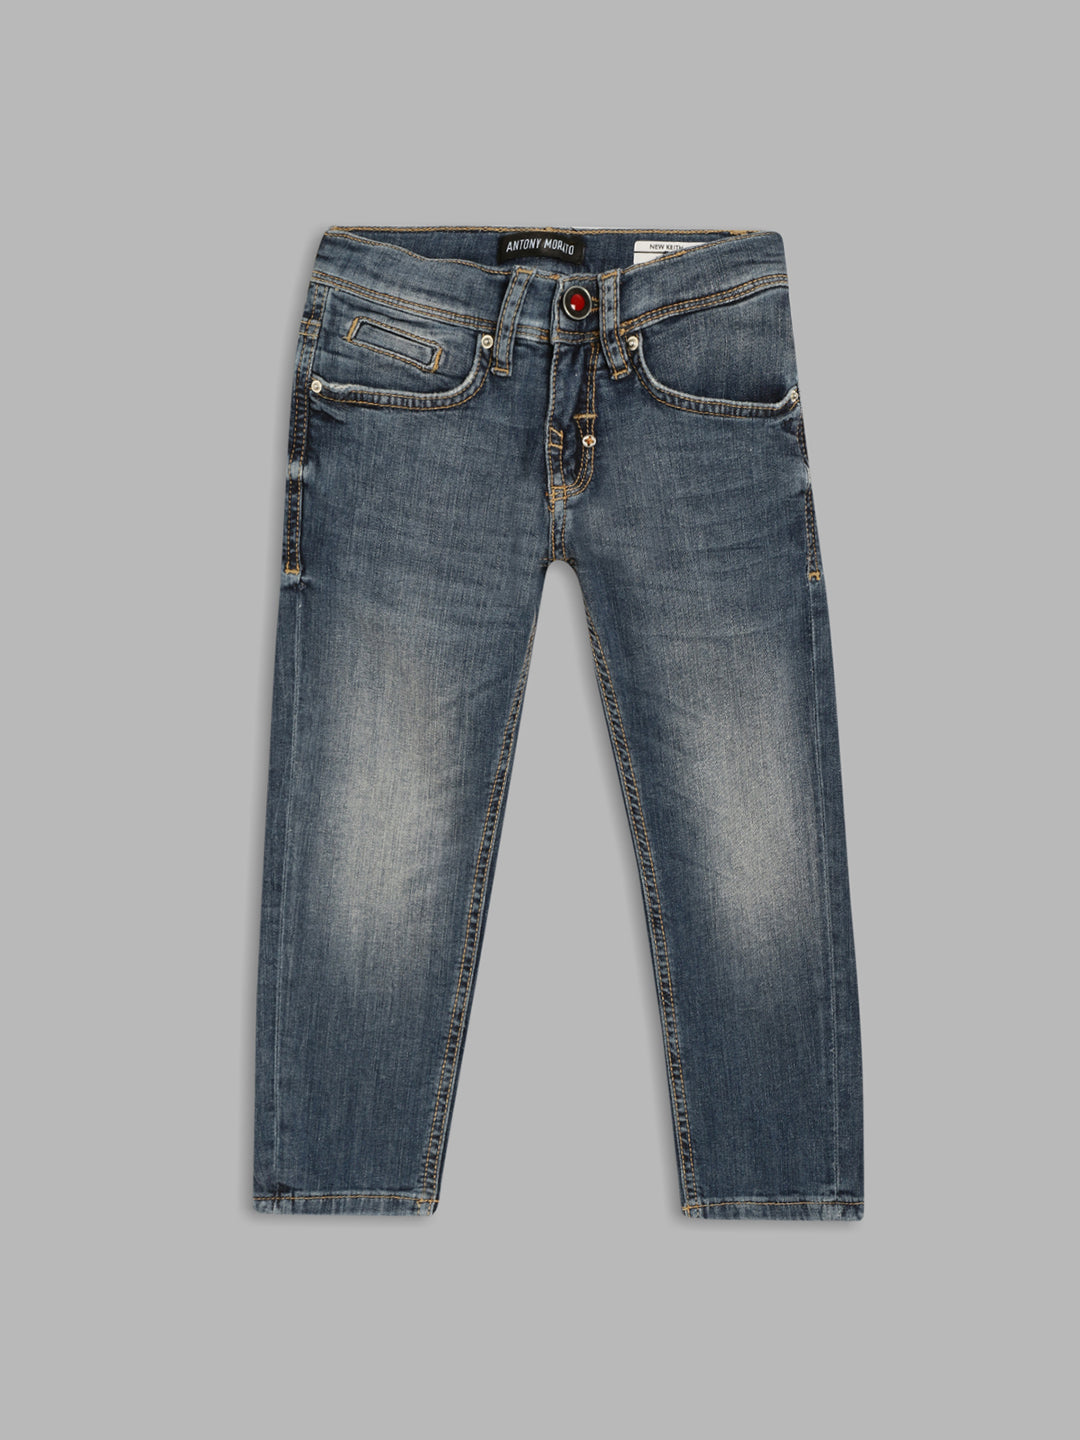 Antony Morato Boys Blue Tapered Fit Heavy Fade Jeans